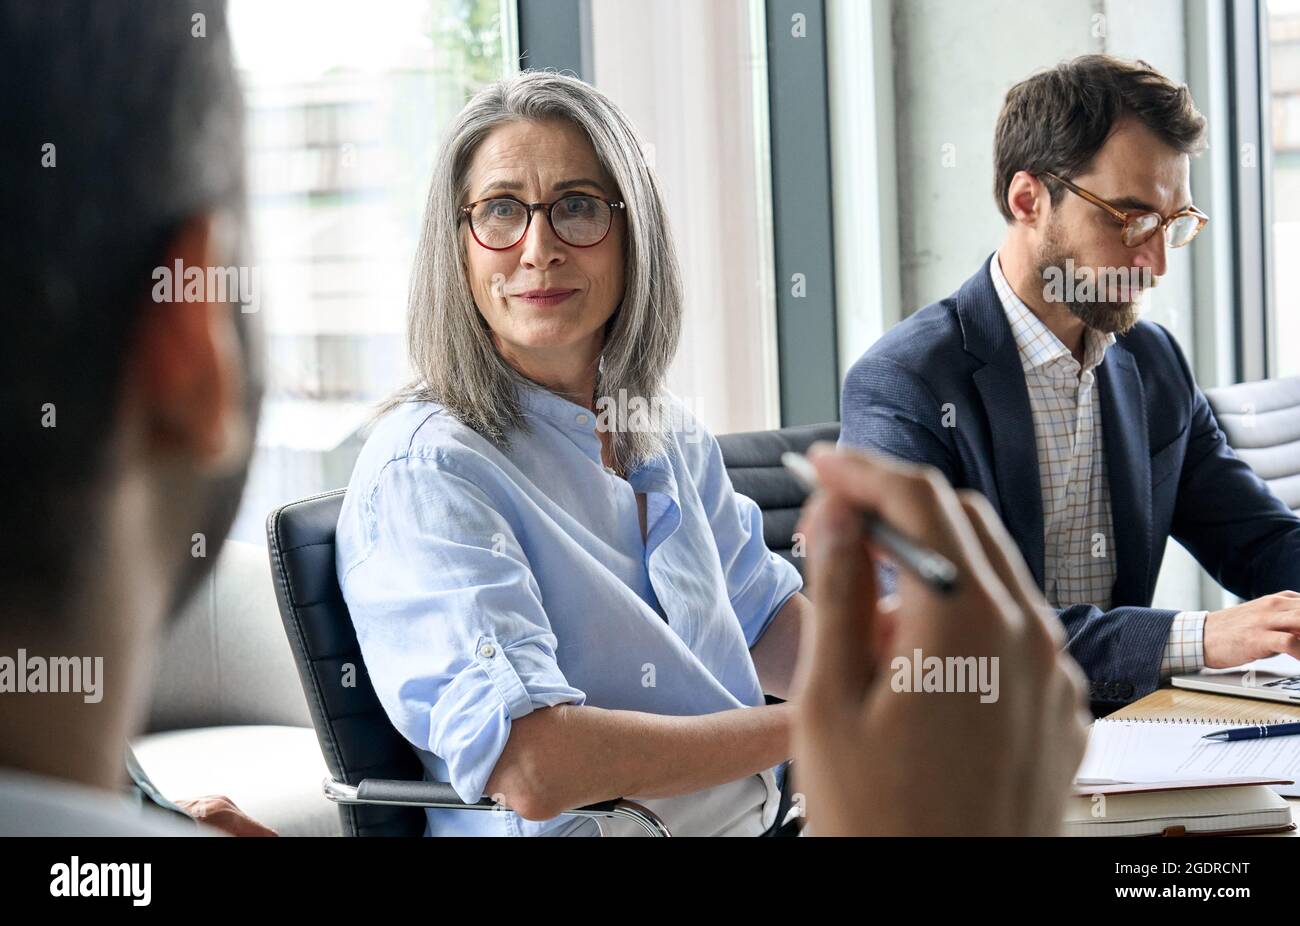 Femme pdg souriante regardant un collègue de Manager lors d'une réunion à table. Banque D'Images